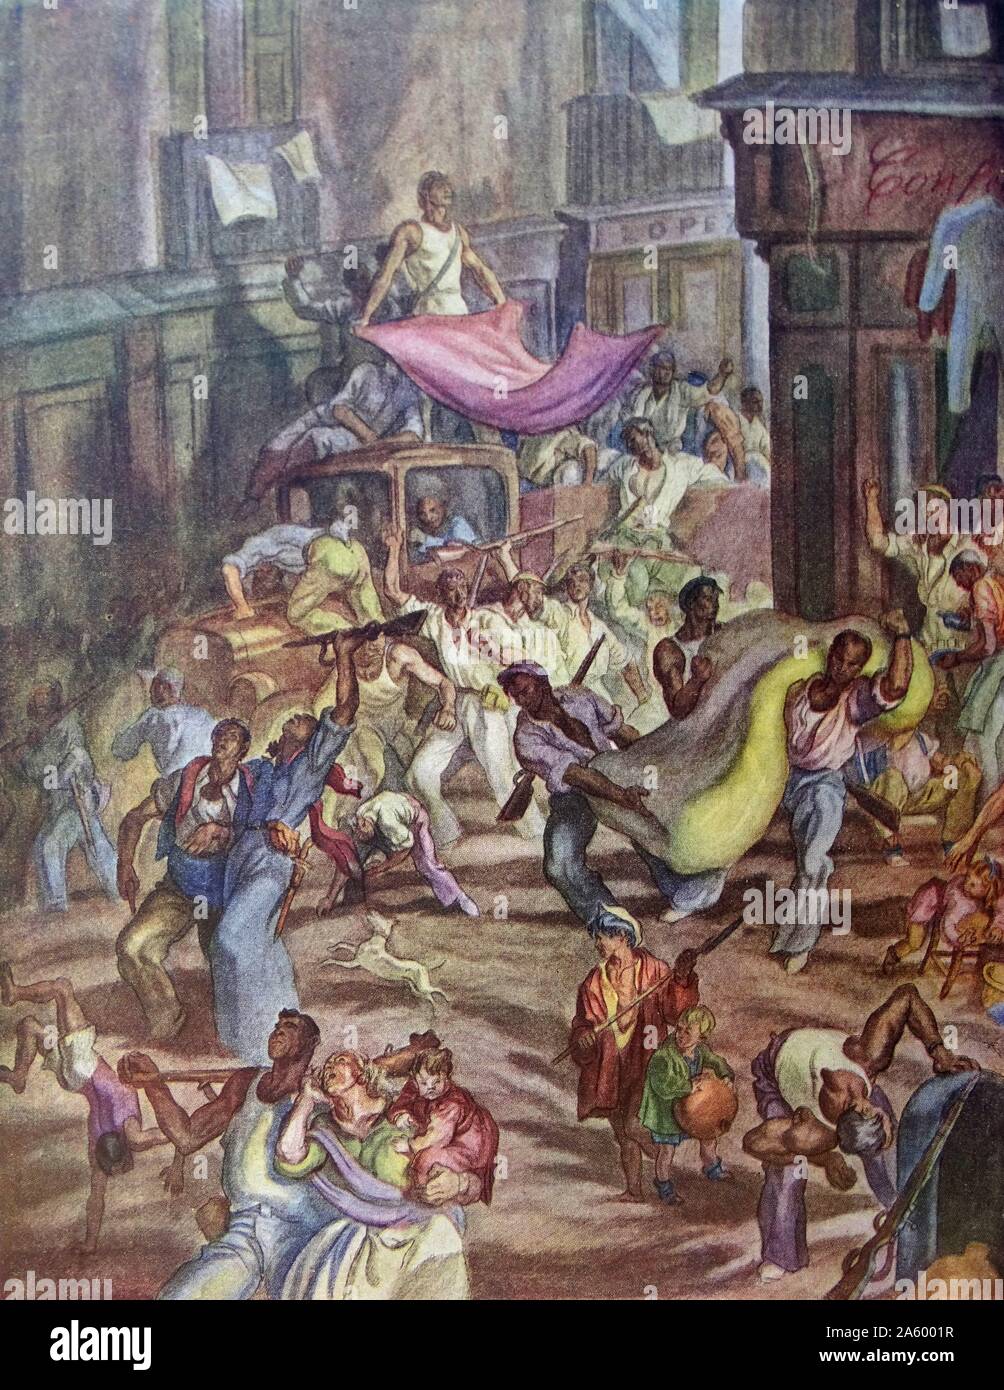 Illustration von Carlos Saenz De Tejada zeigt einen betrunkenen Mob von anarchistischen Plünderungen von Häusern in einer spanischen Stadt während des Bürgerkrieges. Datierte 1937 Stockfoto